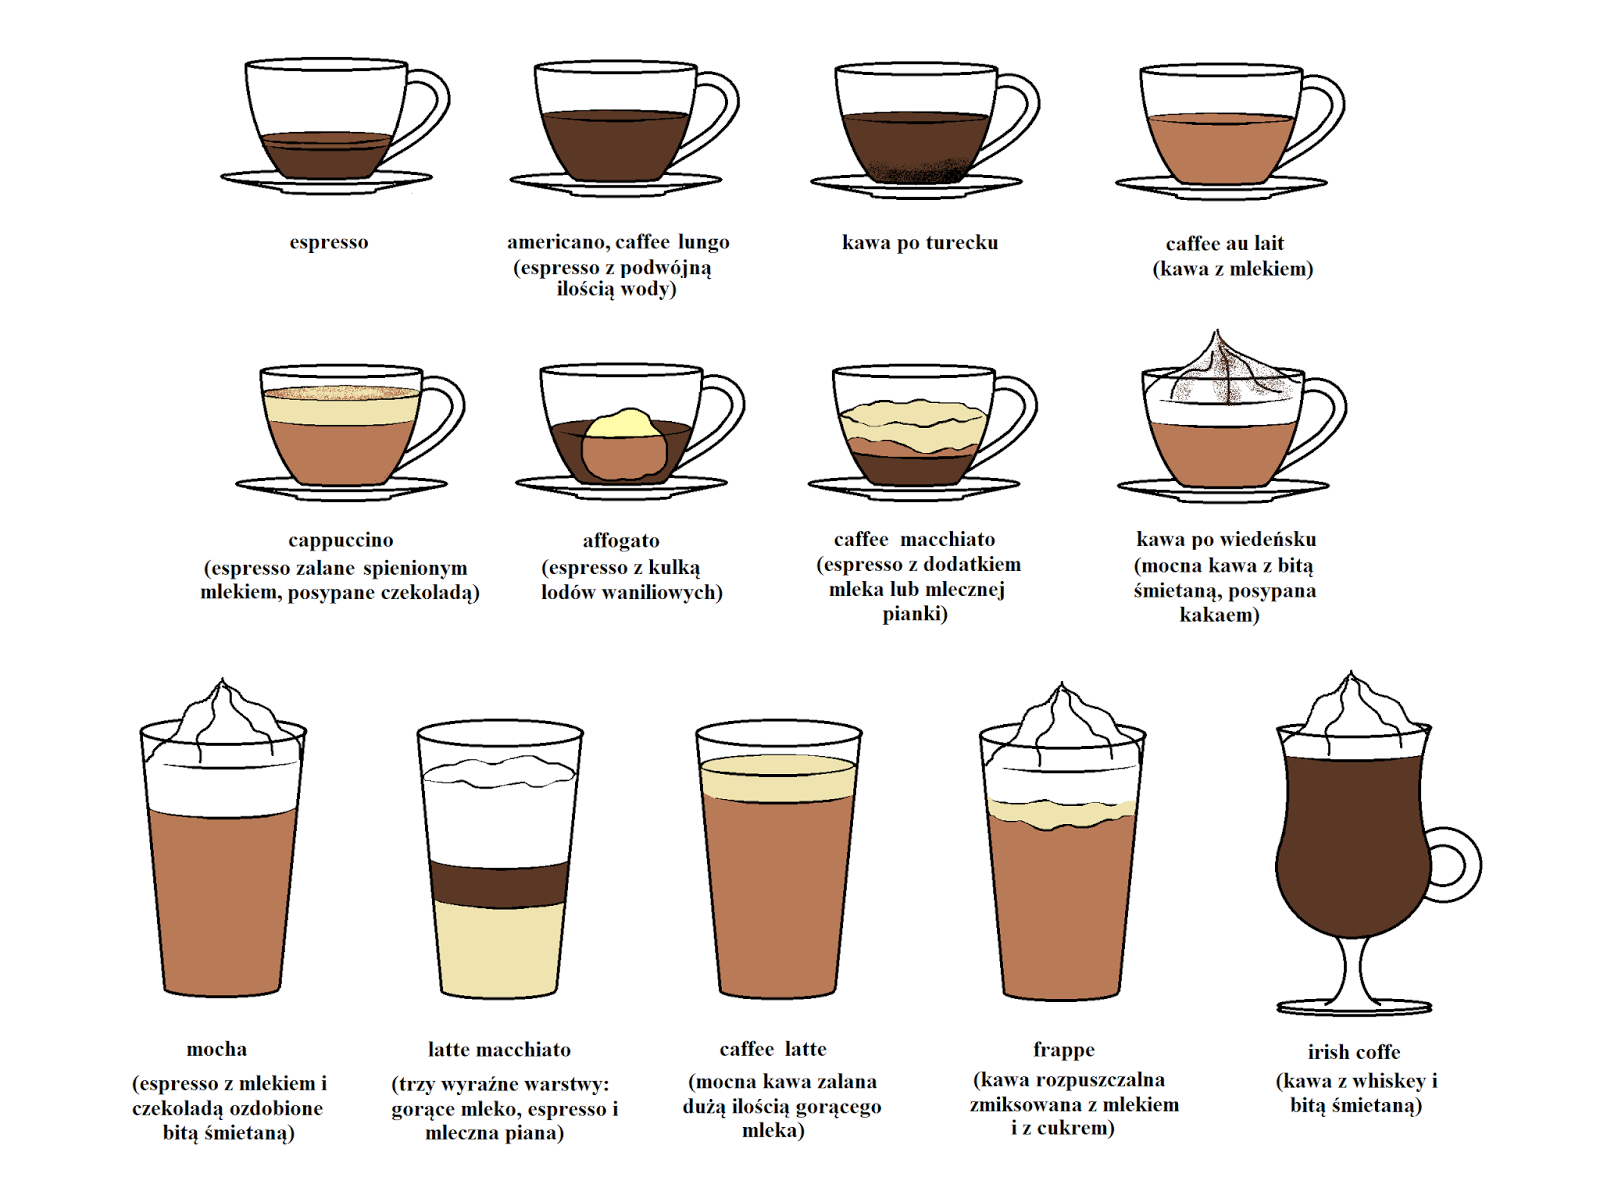 Как приготовить капучино в кофемашине - основные правила